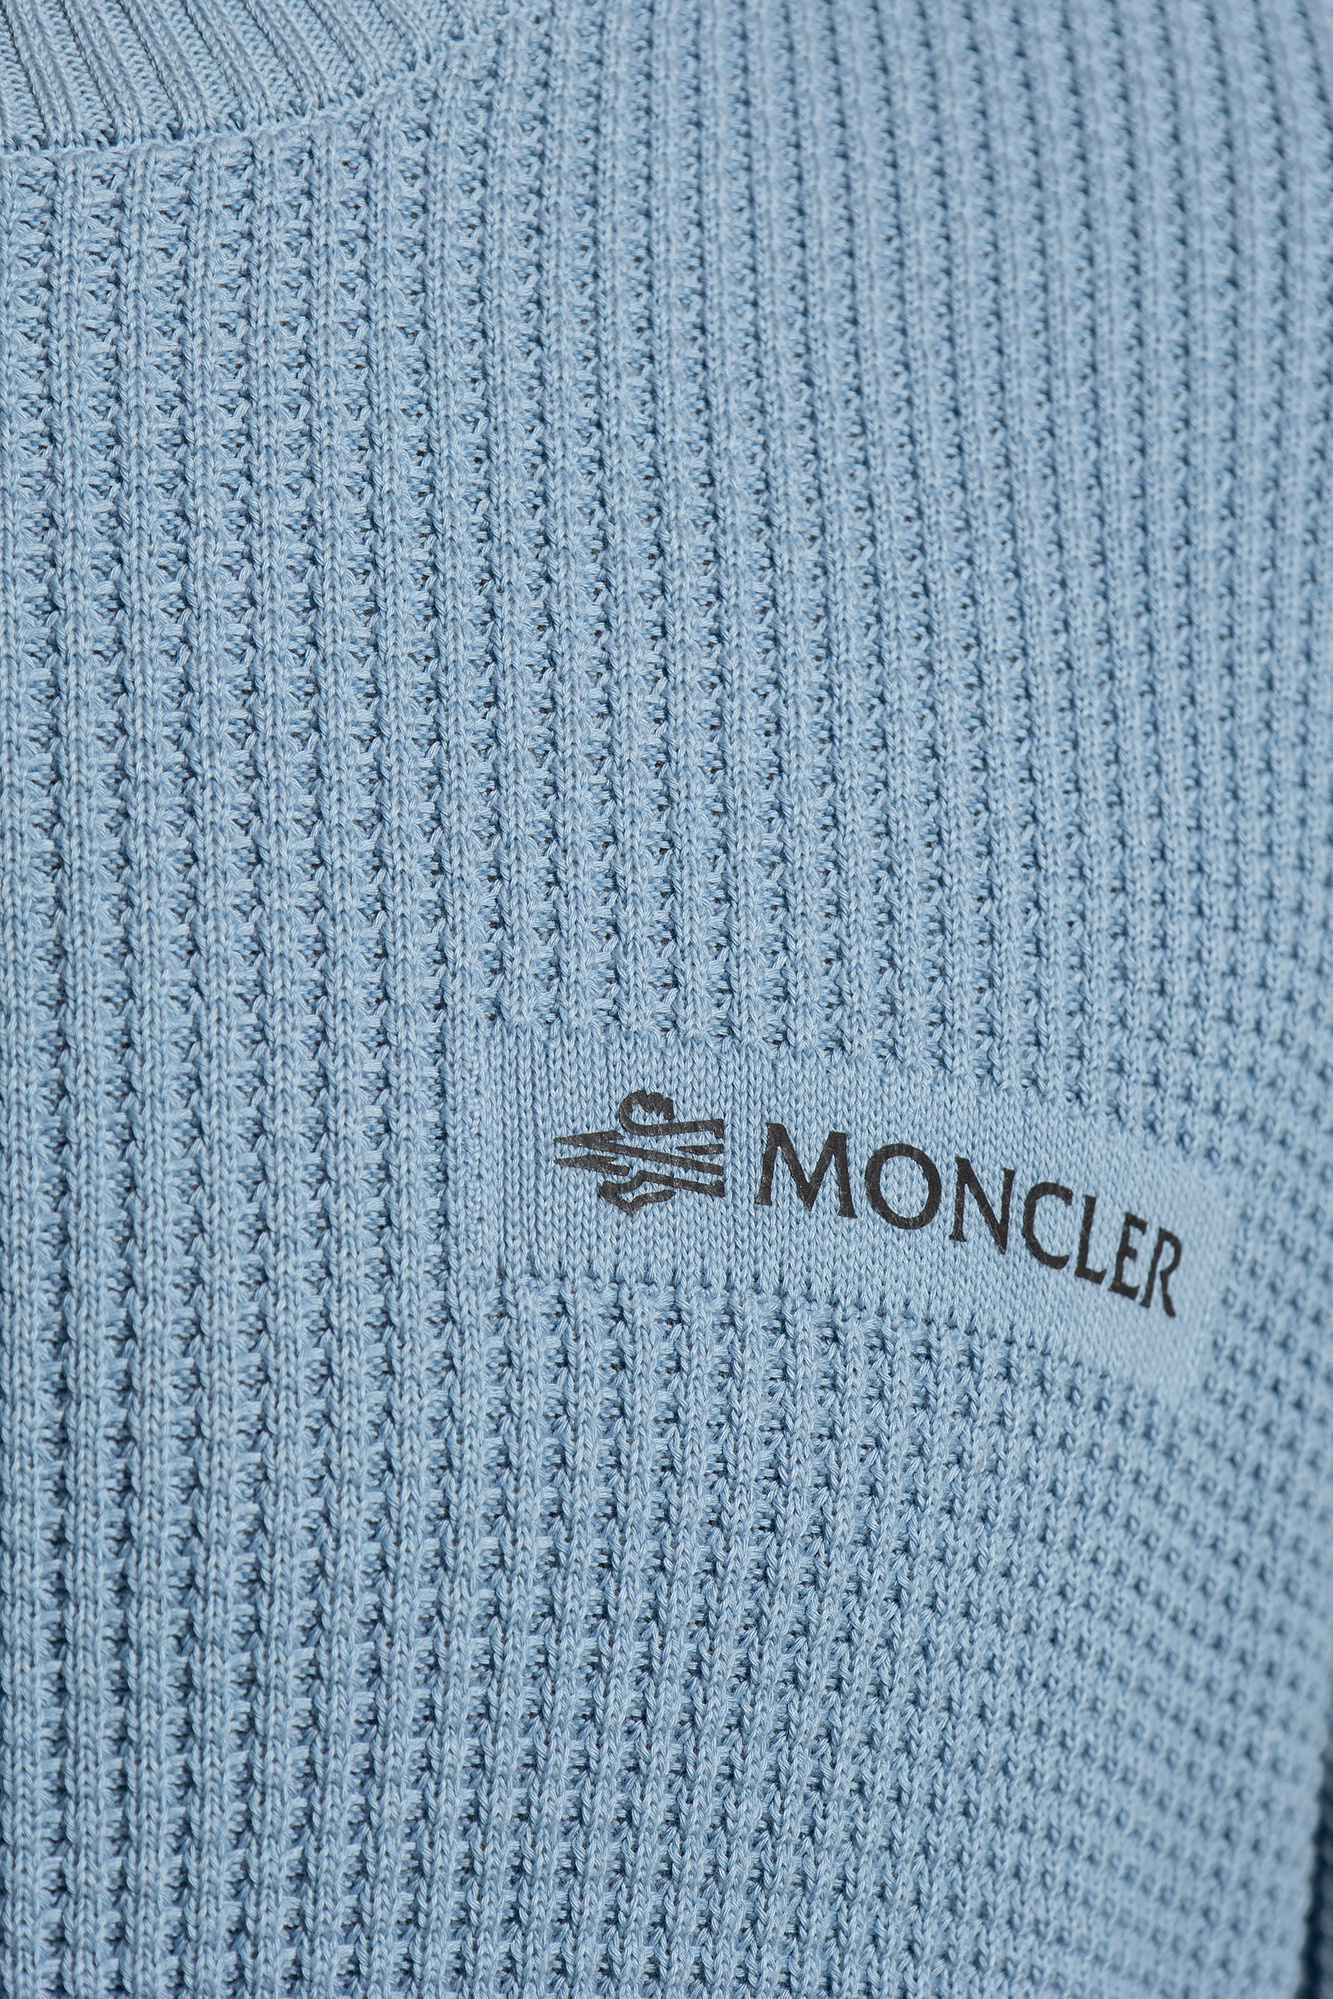 Moncler Sweatshirt com capucho Under Armour ColdGear azul marinho mulher